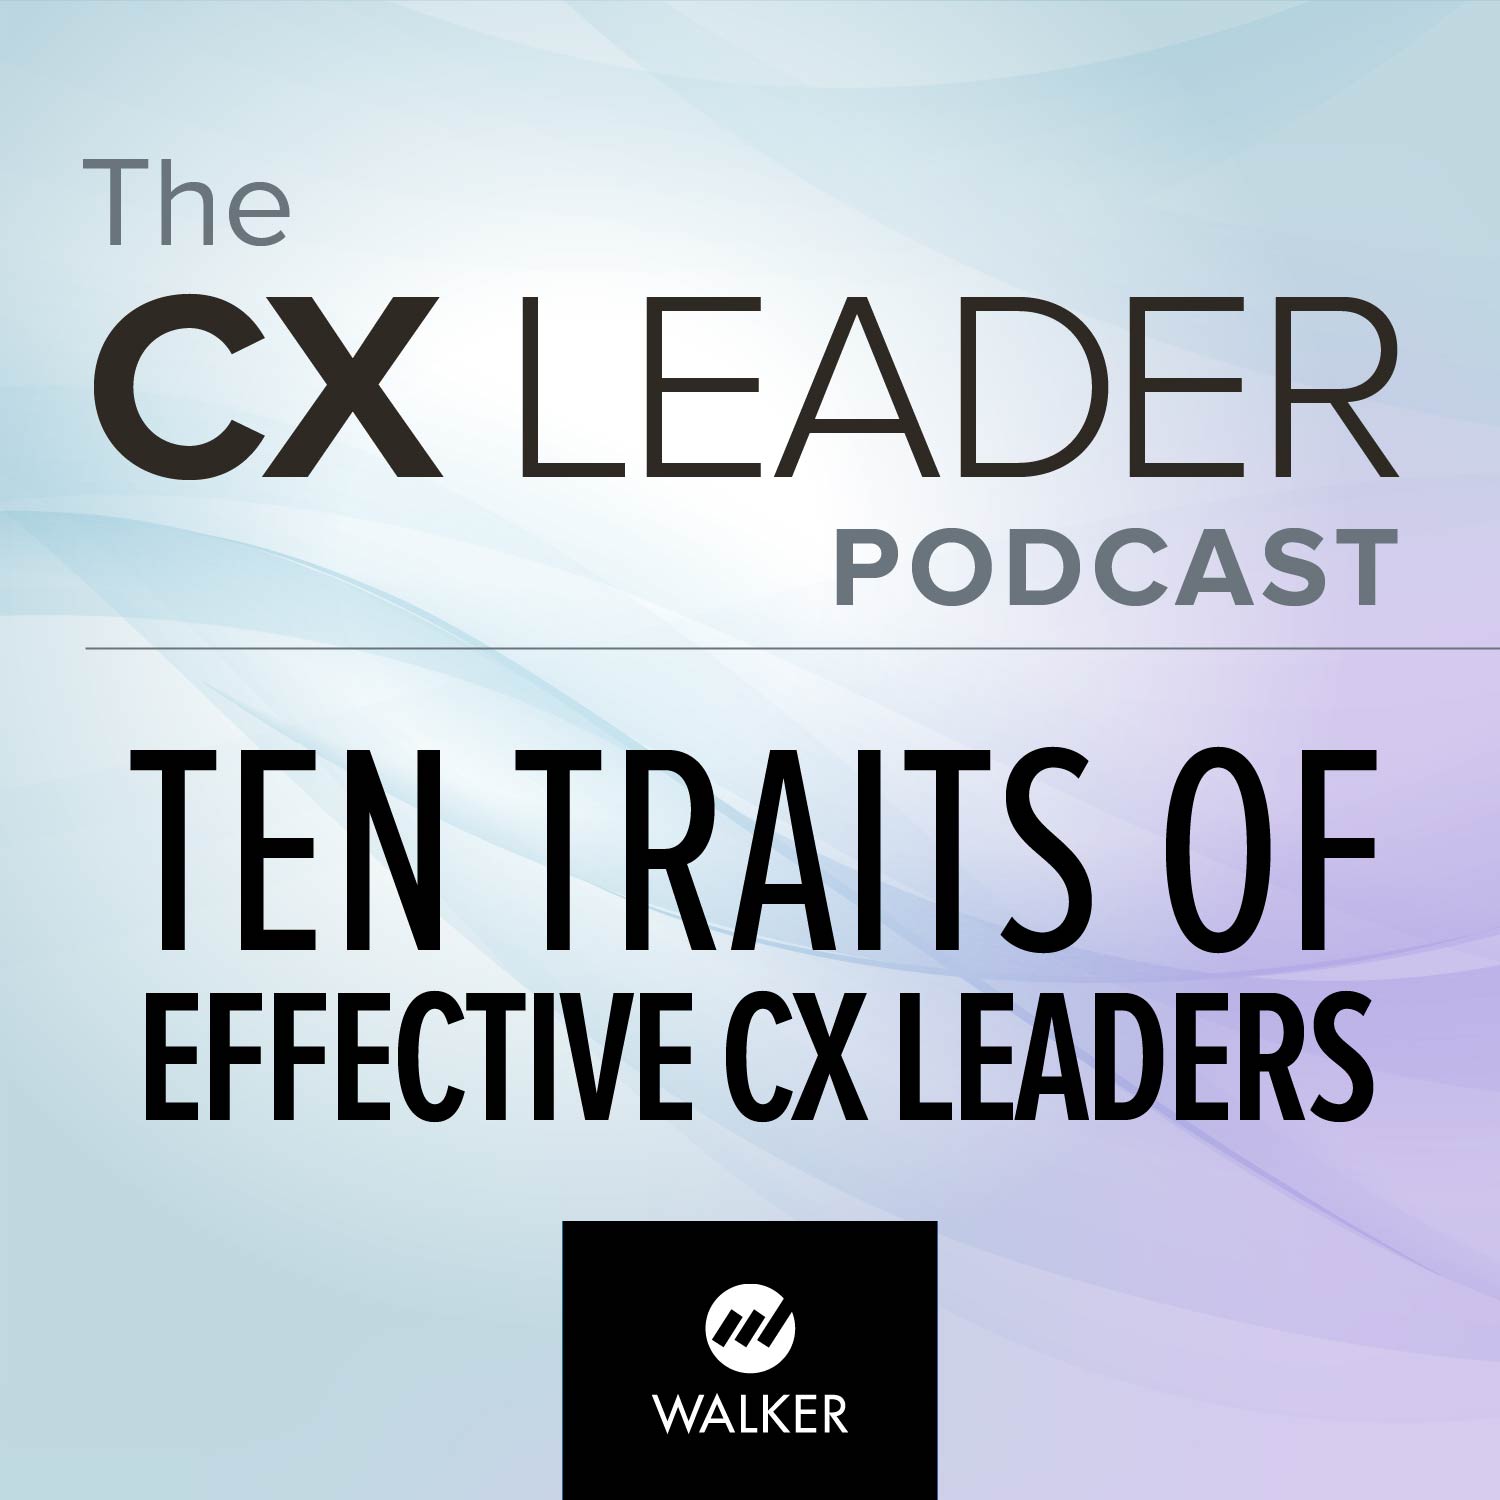 Ten Traits of Effective CX Leaders